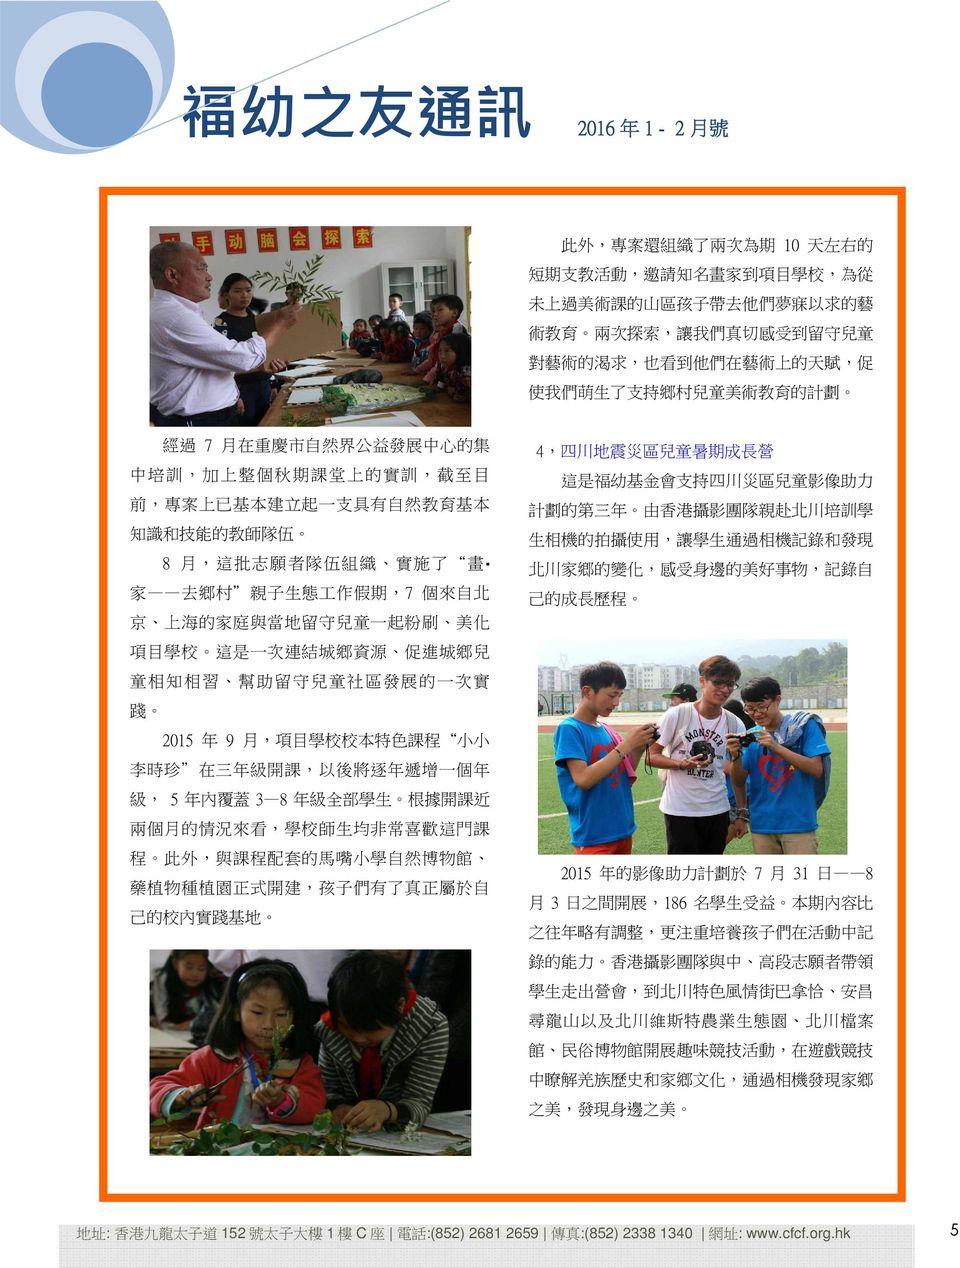 了 畫 家 去 鄉 村 親 子 生 態 工 作 假 期,7 個 來 自 北 京 上 海 的 家 庭 與 當 地 留 守 兒 童 一 起 粉 刷 美 化 項 目 學 校 這 是 一 次 連 結 城 鄉 資 源 促 進 城 鄉 兒 童 相 知 相 習 幫 助 留 守 兒 童 社 區 發 展 的 一 次 實 踐 2015 年 9 月, 項 目 學 校 校 本 特 色 課 程 小 小 李 時 珍 在 三